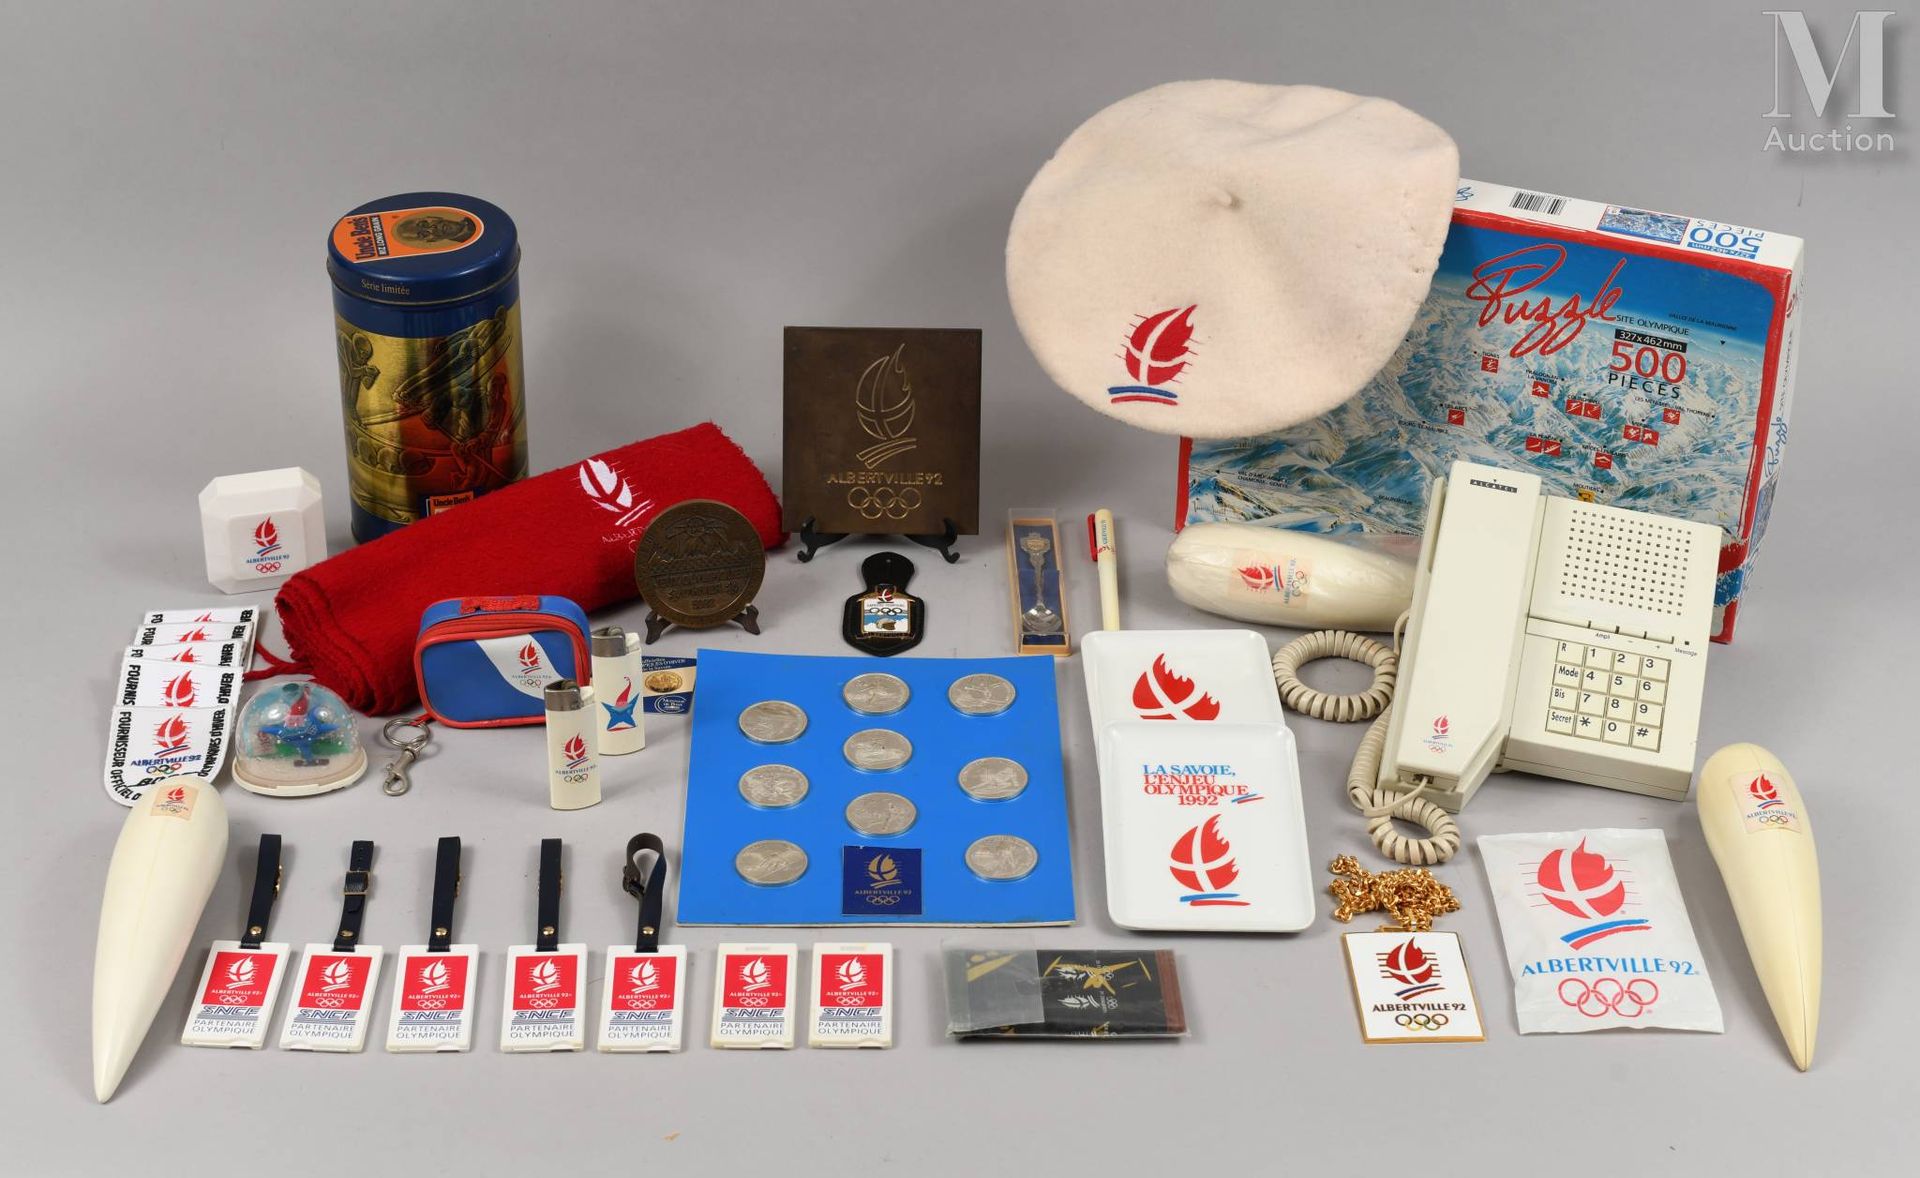 ALBERTVILLE 1992 1992年阿尔伯特维尔.一套35件第十六届冬季奥林匹克运动会的纪念品（副产品），包括奖牌，迷你火炬，电话，拼图等。状况良好。